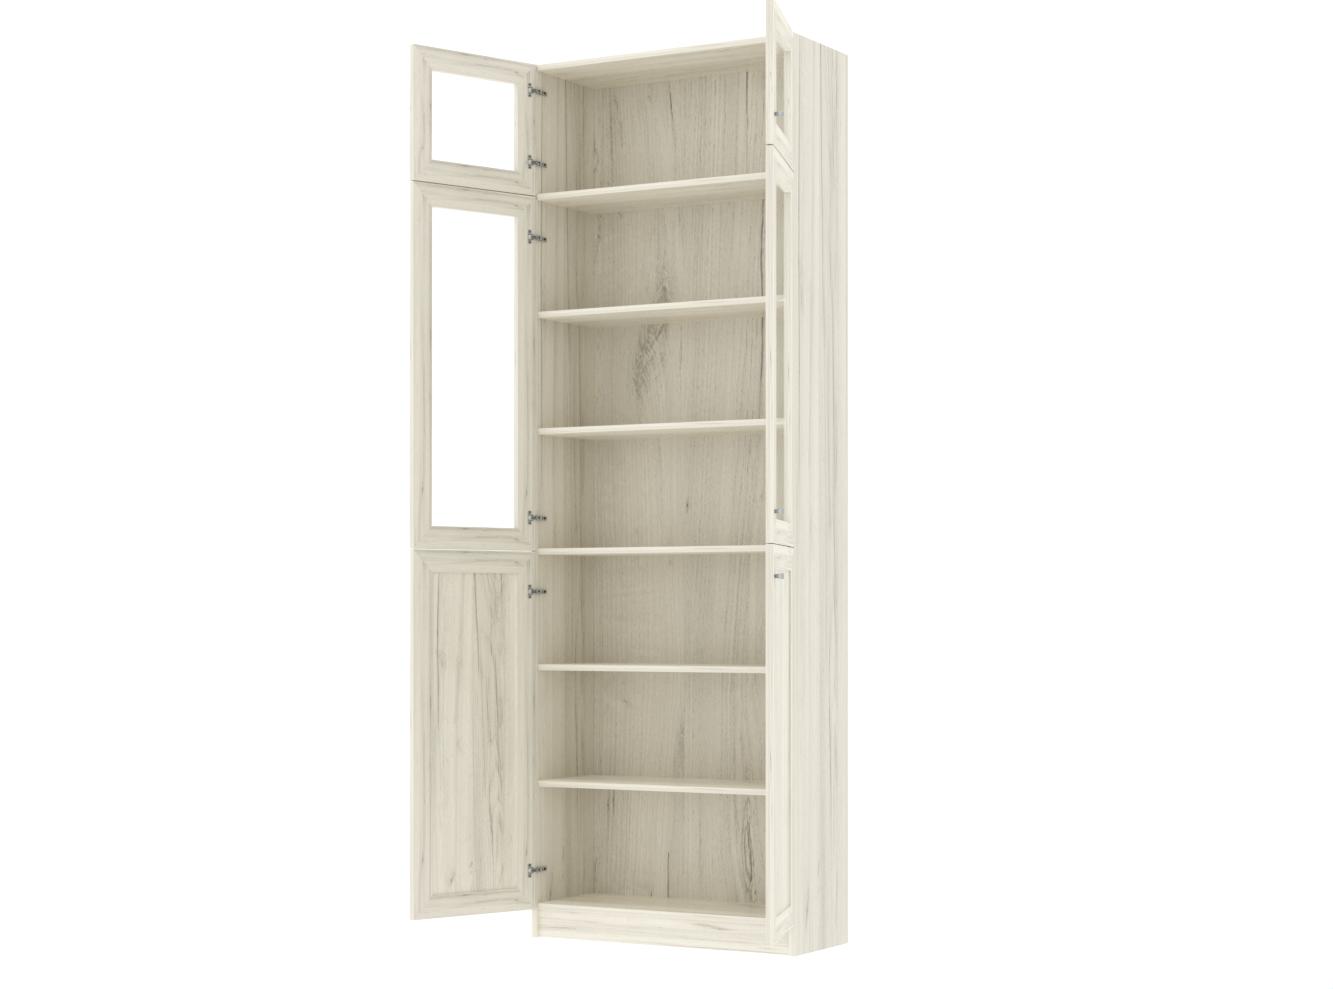  Книжный шкаф Билли 352 oak white craft ИКЕА (IKEA) изображение товара